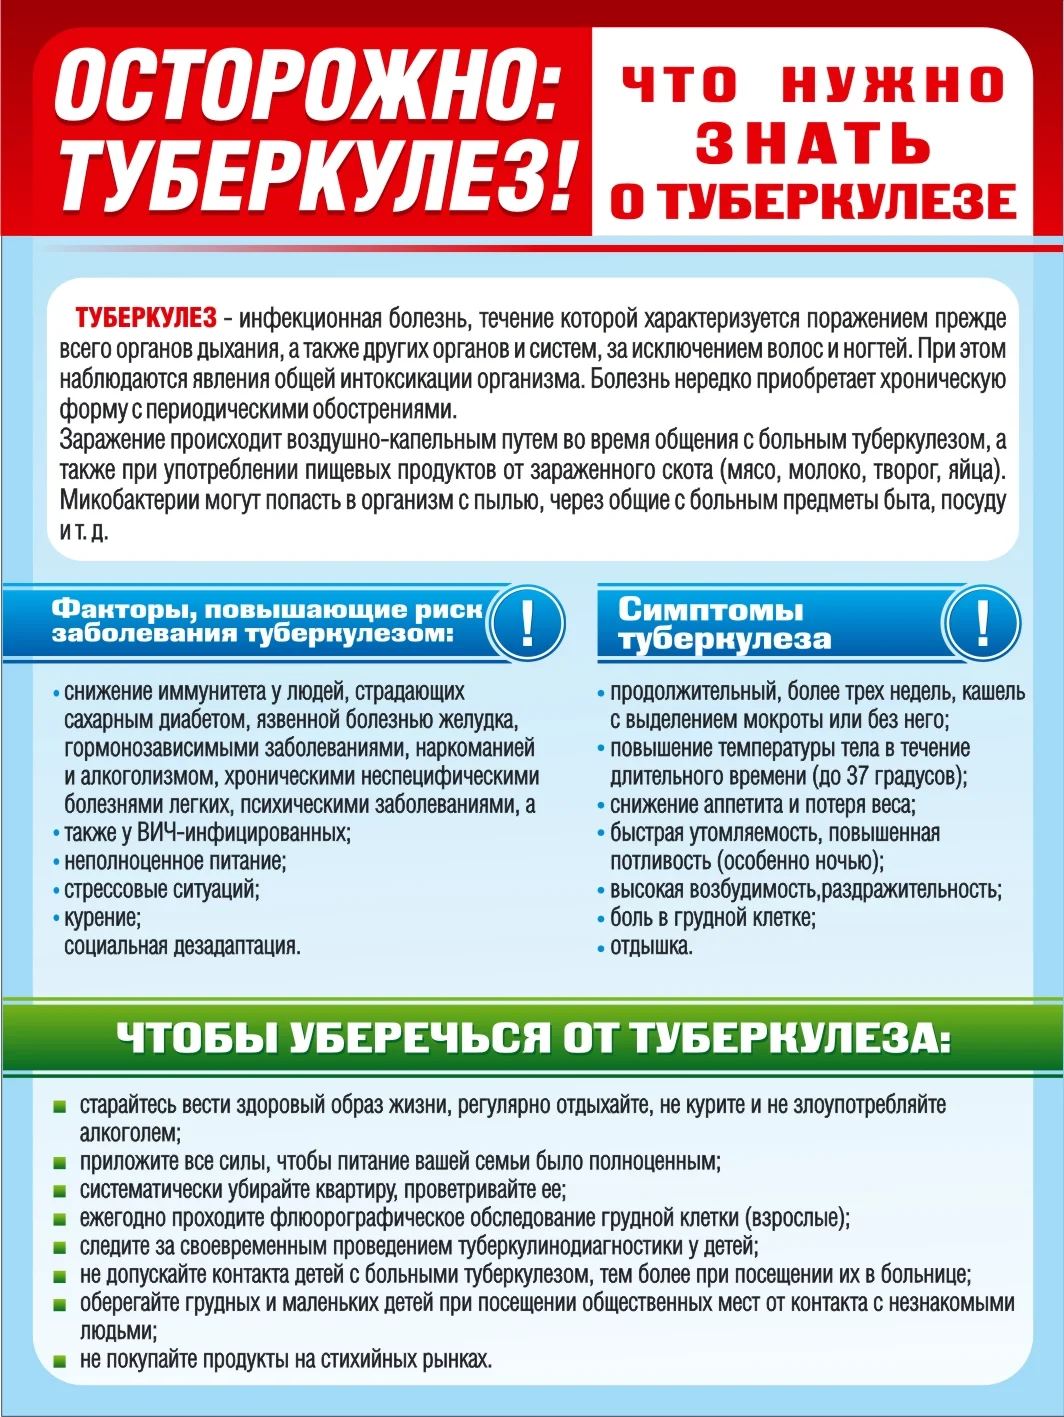 В Свердловской области сохраняется снижение заболеваемости туберкулезом